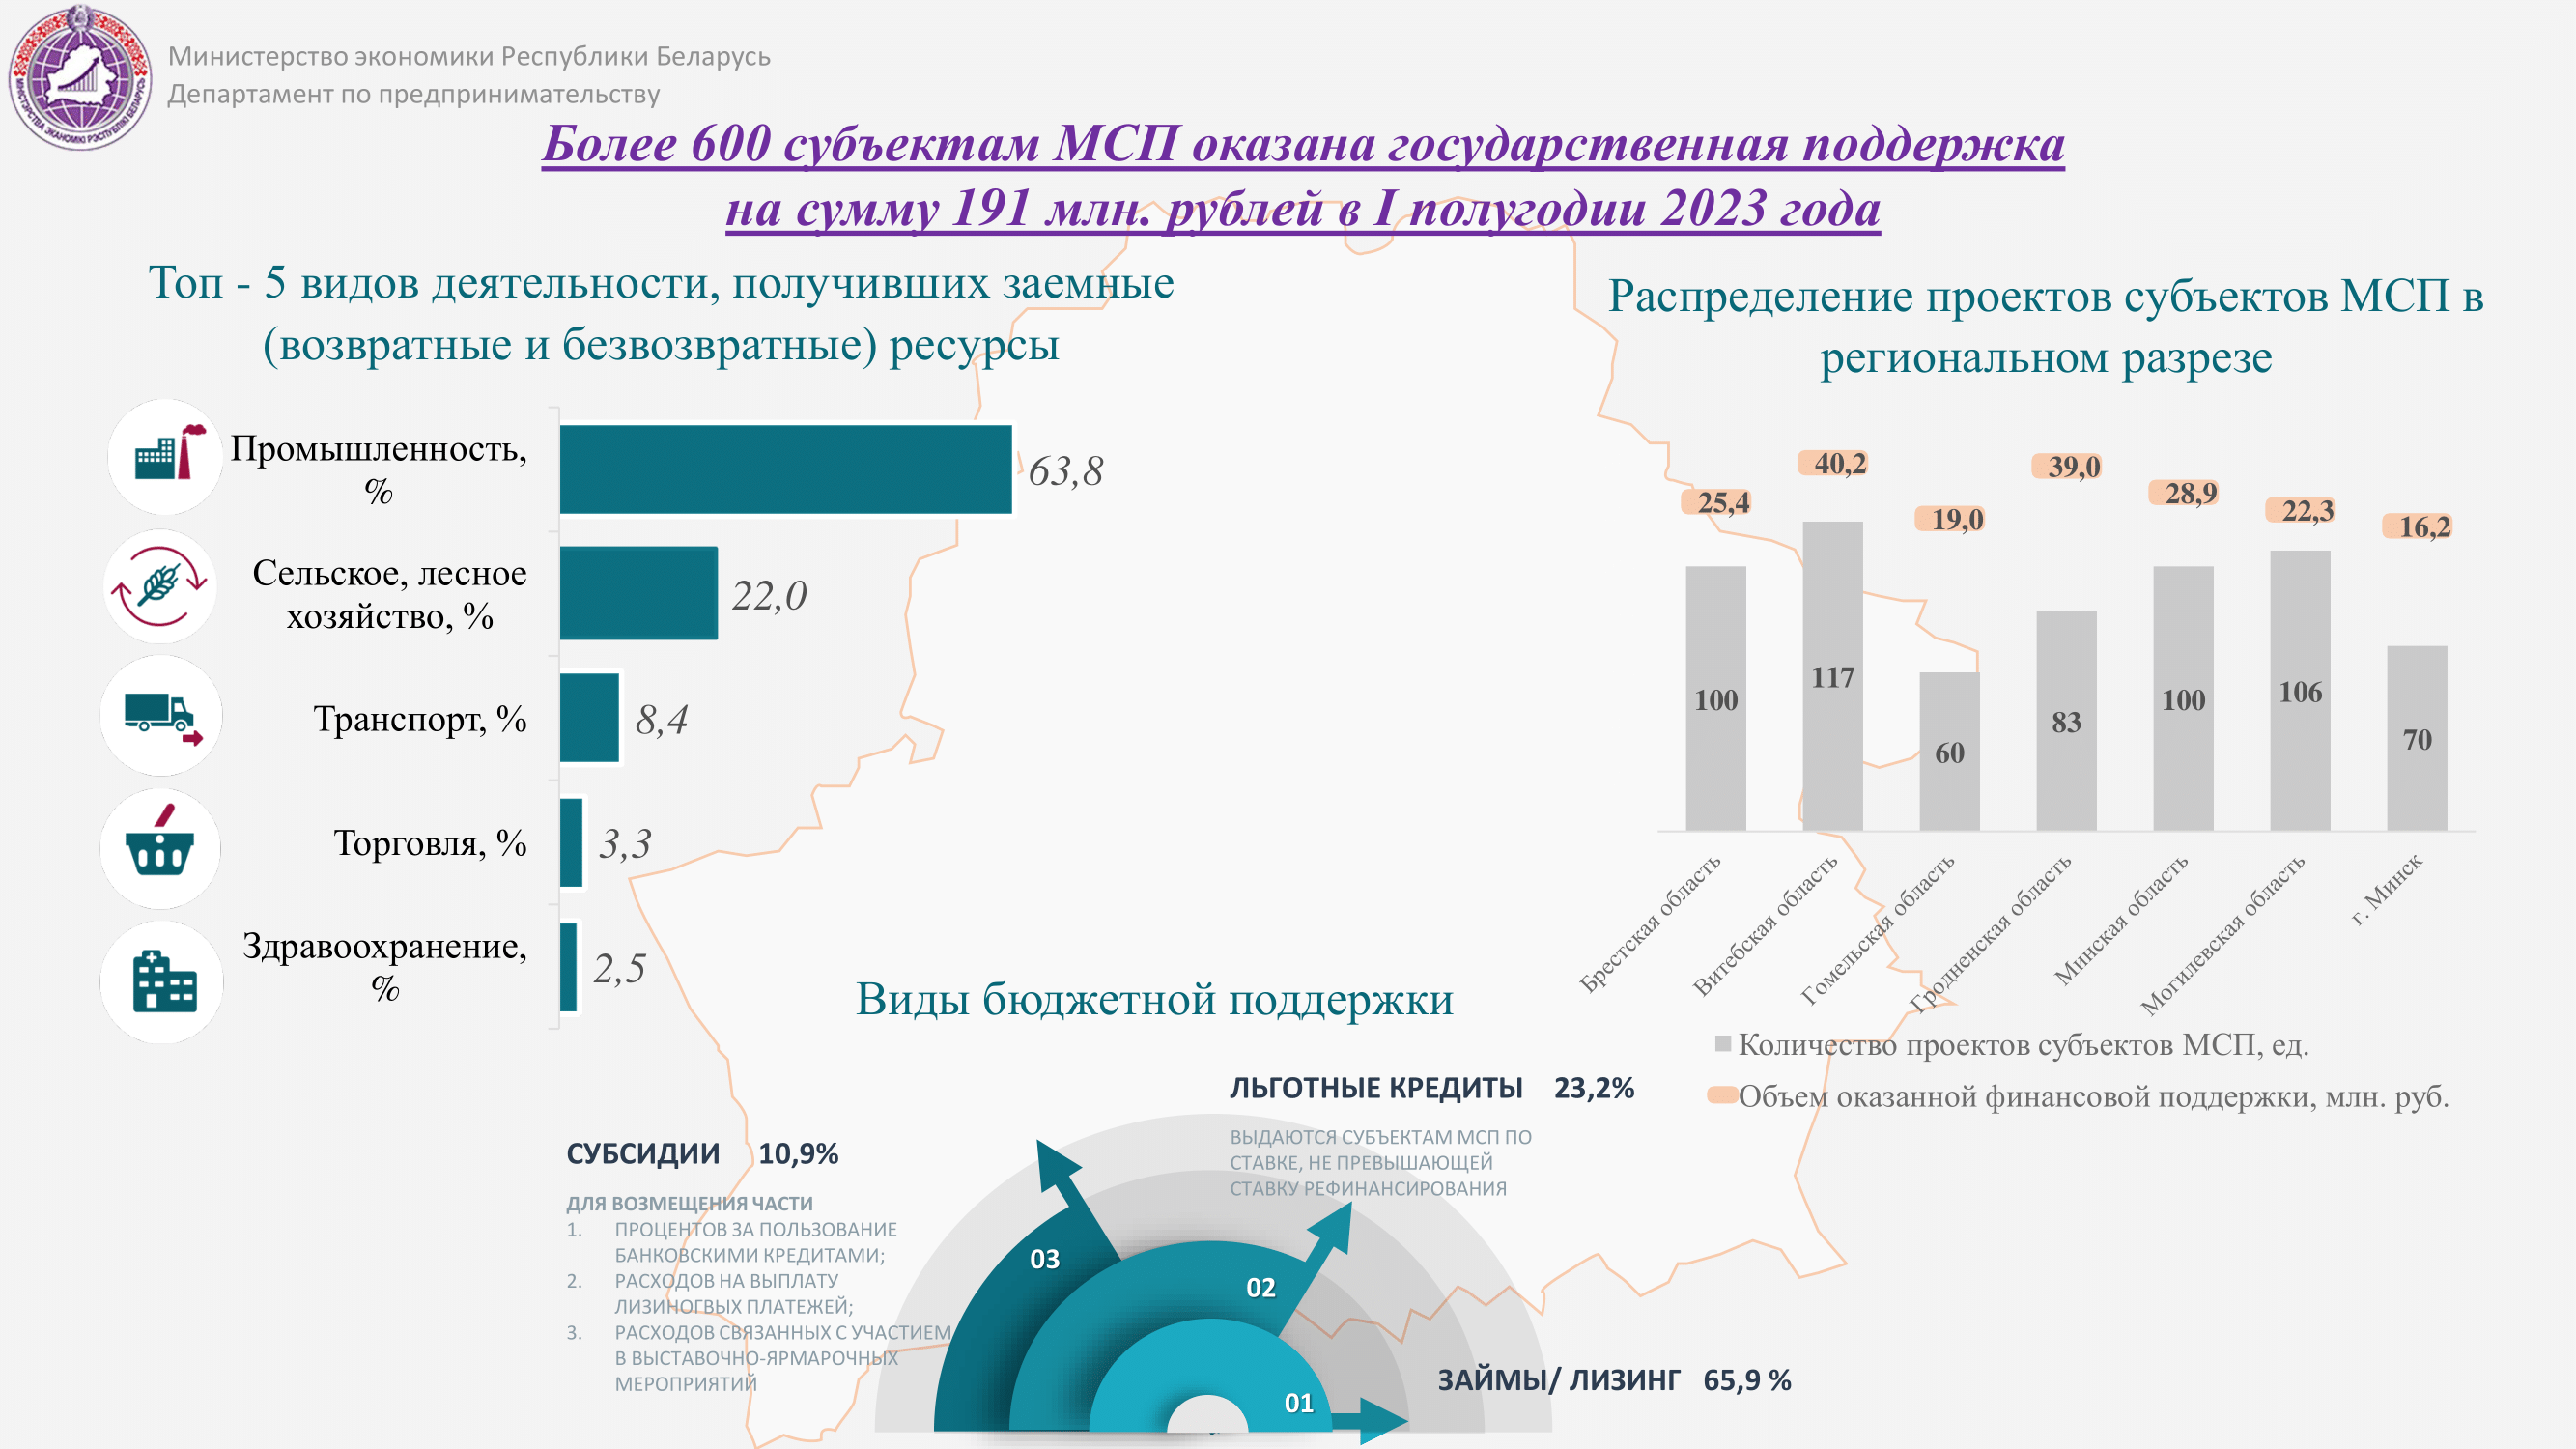 Более 600 субъектам МСП оказана государственная поддержка  на сумму 191 млн. рублей в I полугодии 2023 года